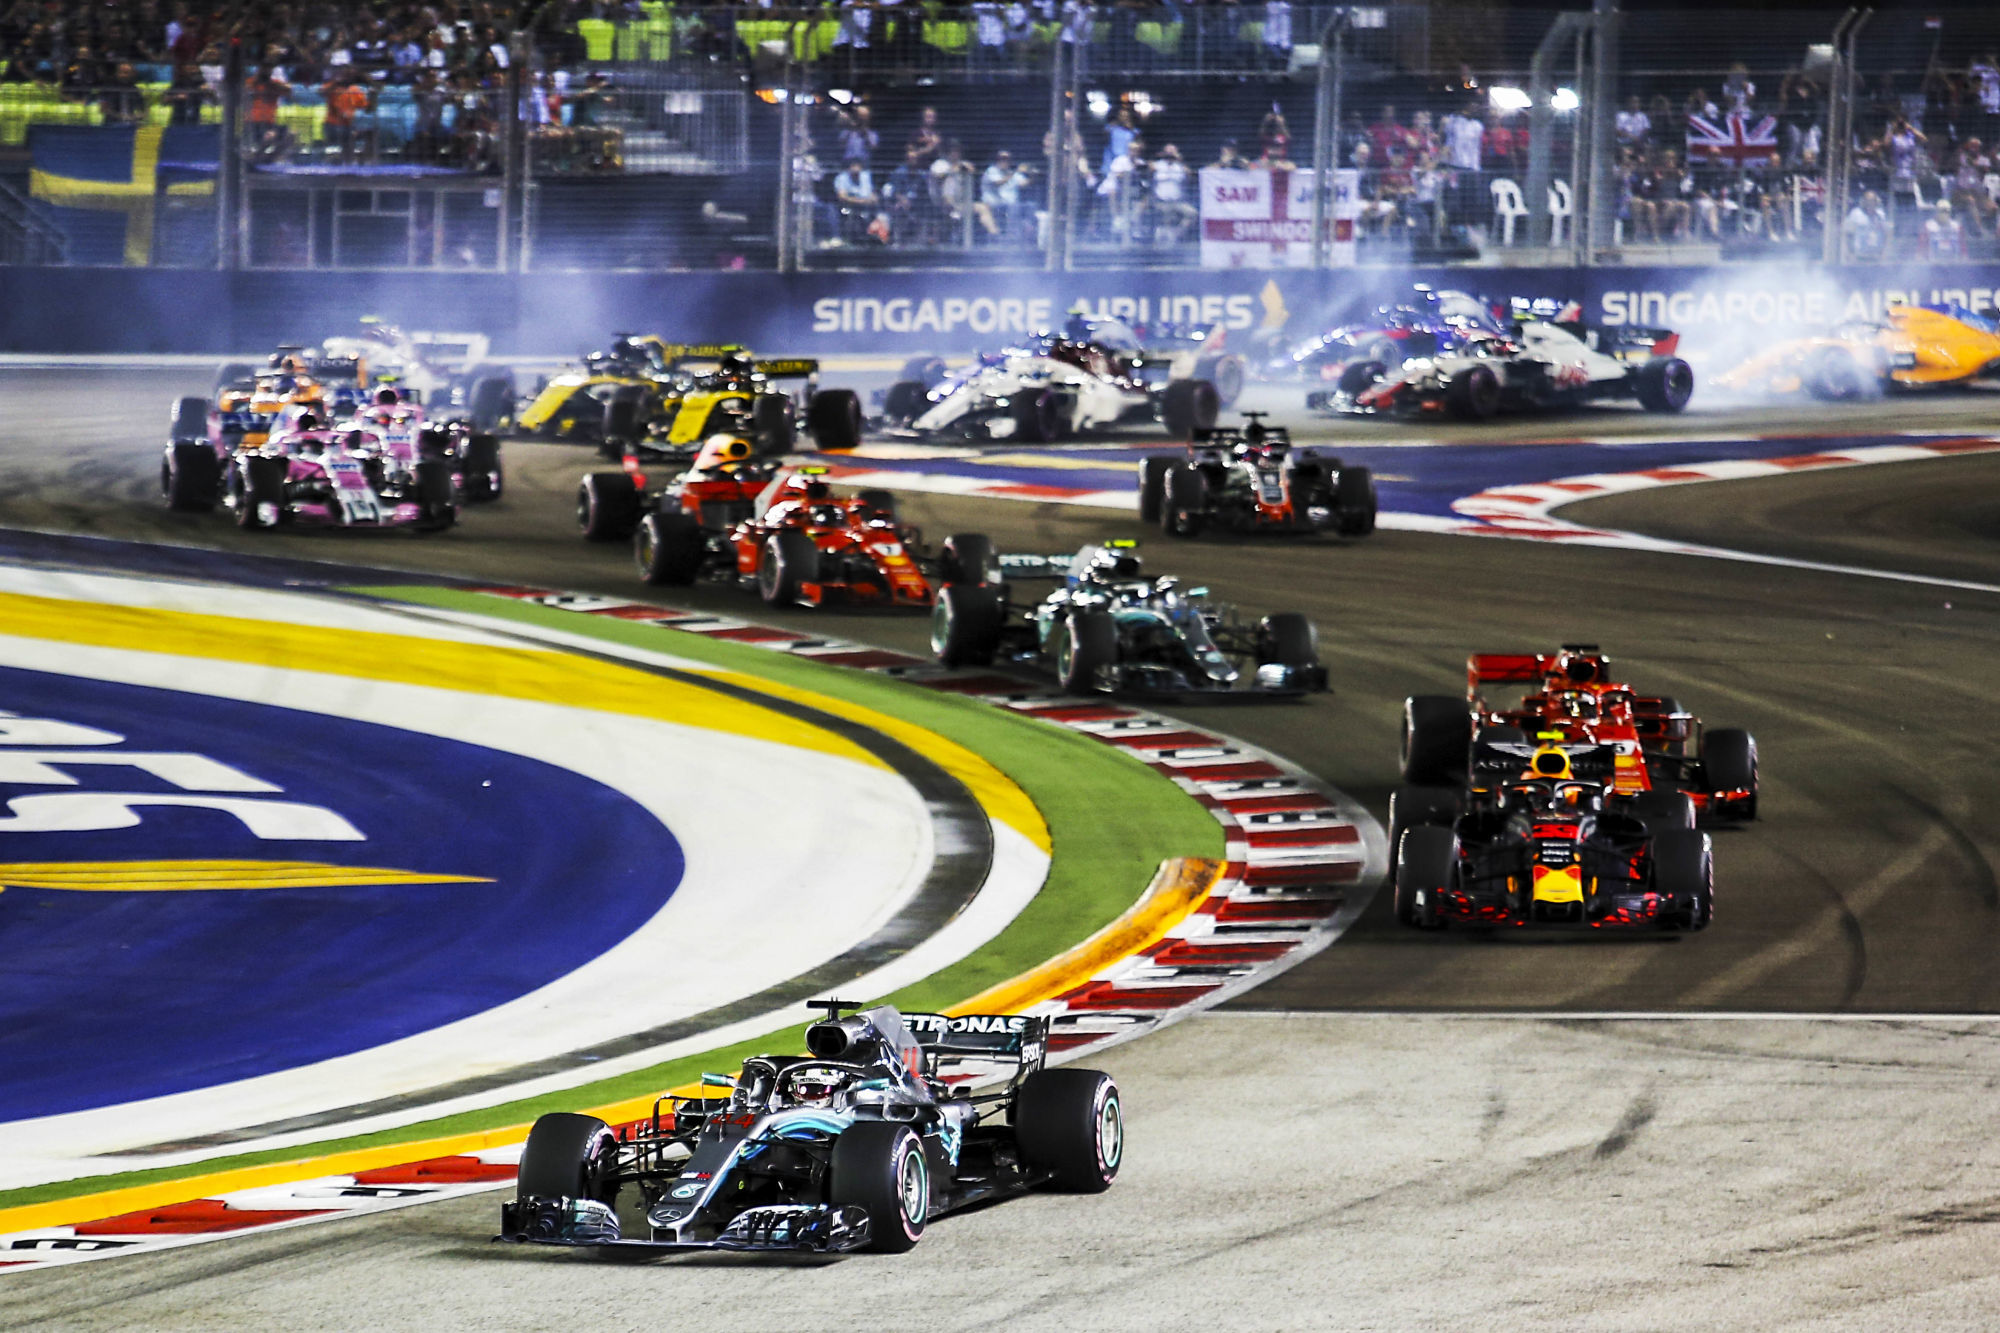 Grand Prix de Singapour de F1 : dates, horaires, chaîne TV et palmarès de la 15e manche du championnat du monde 2023